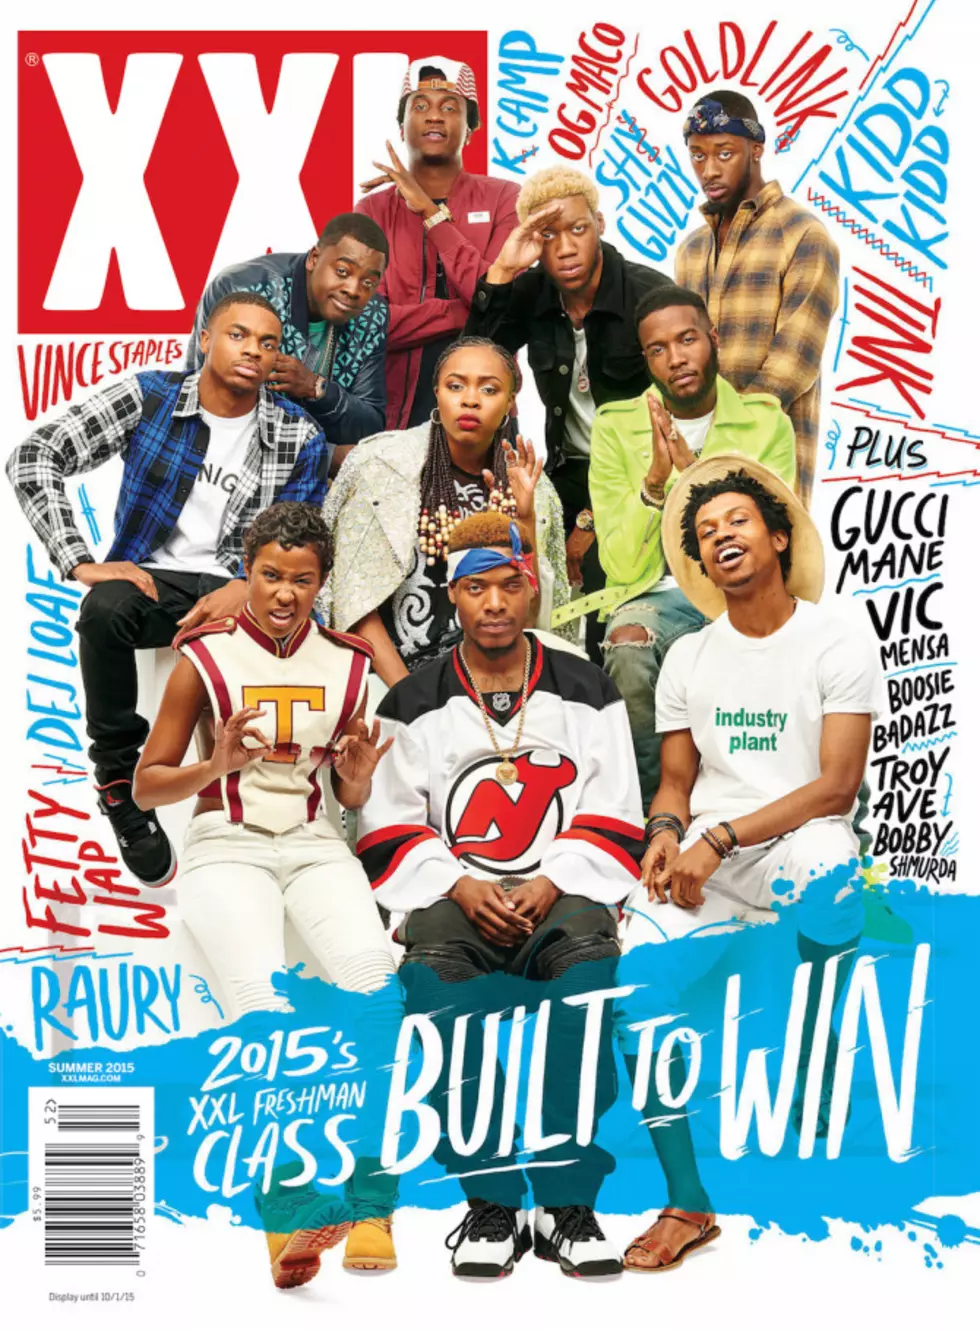 The 2015 XXL Freshman Class React to Landing the Cover